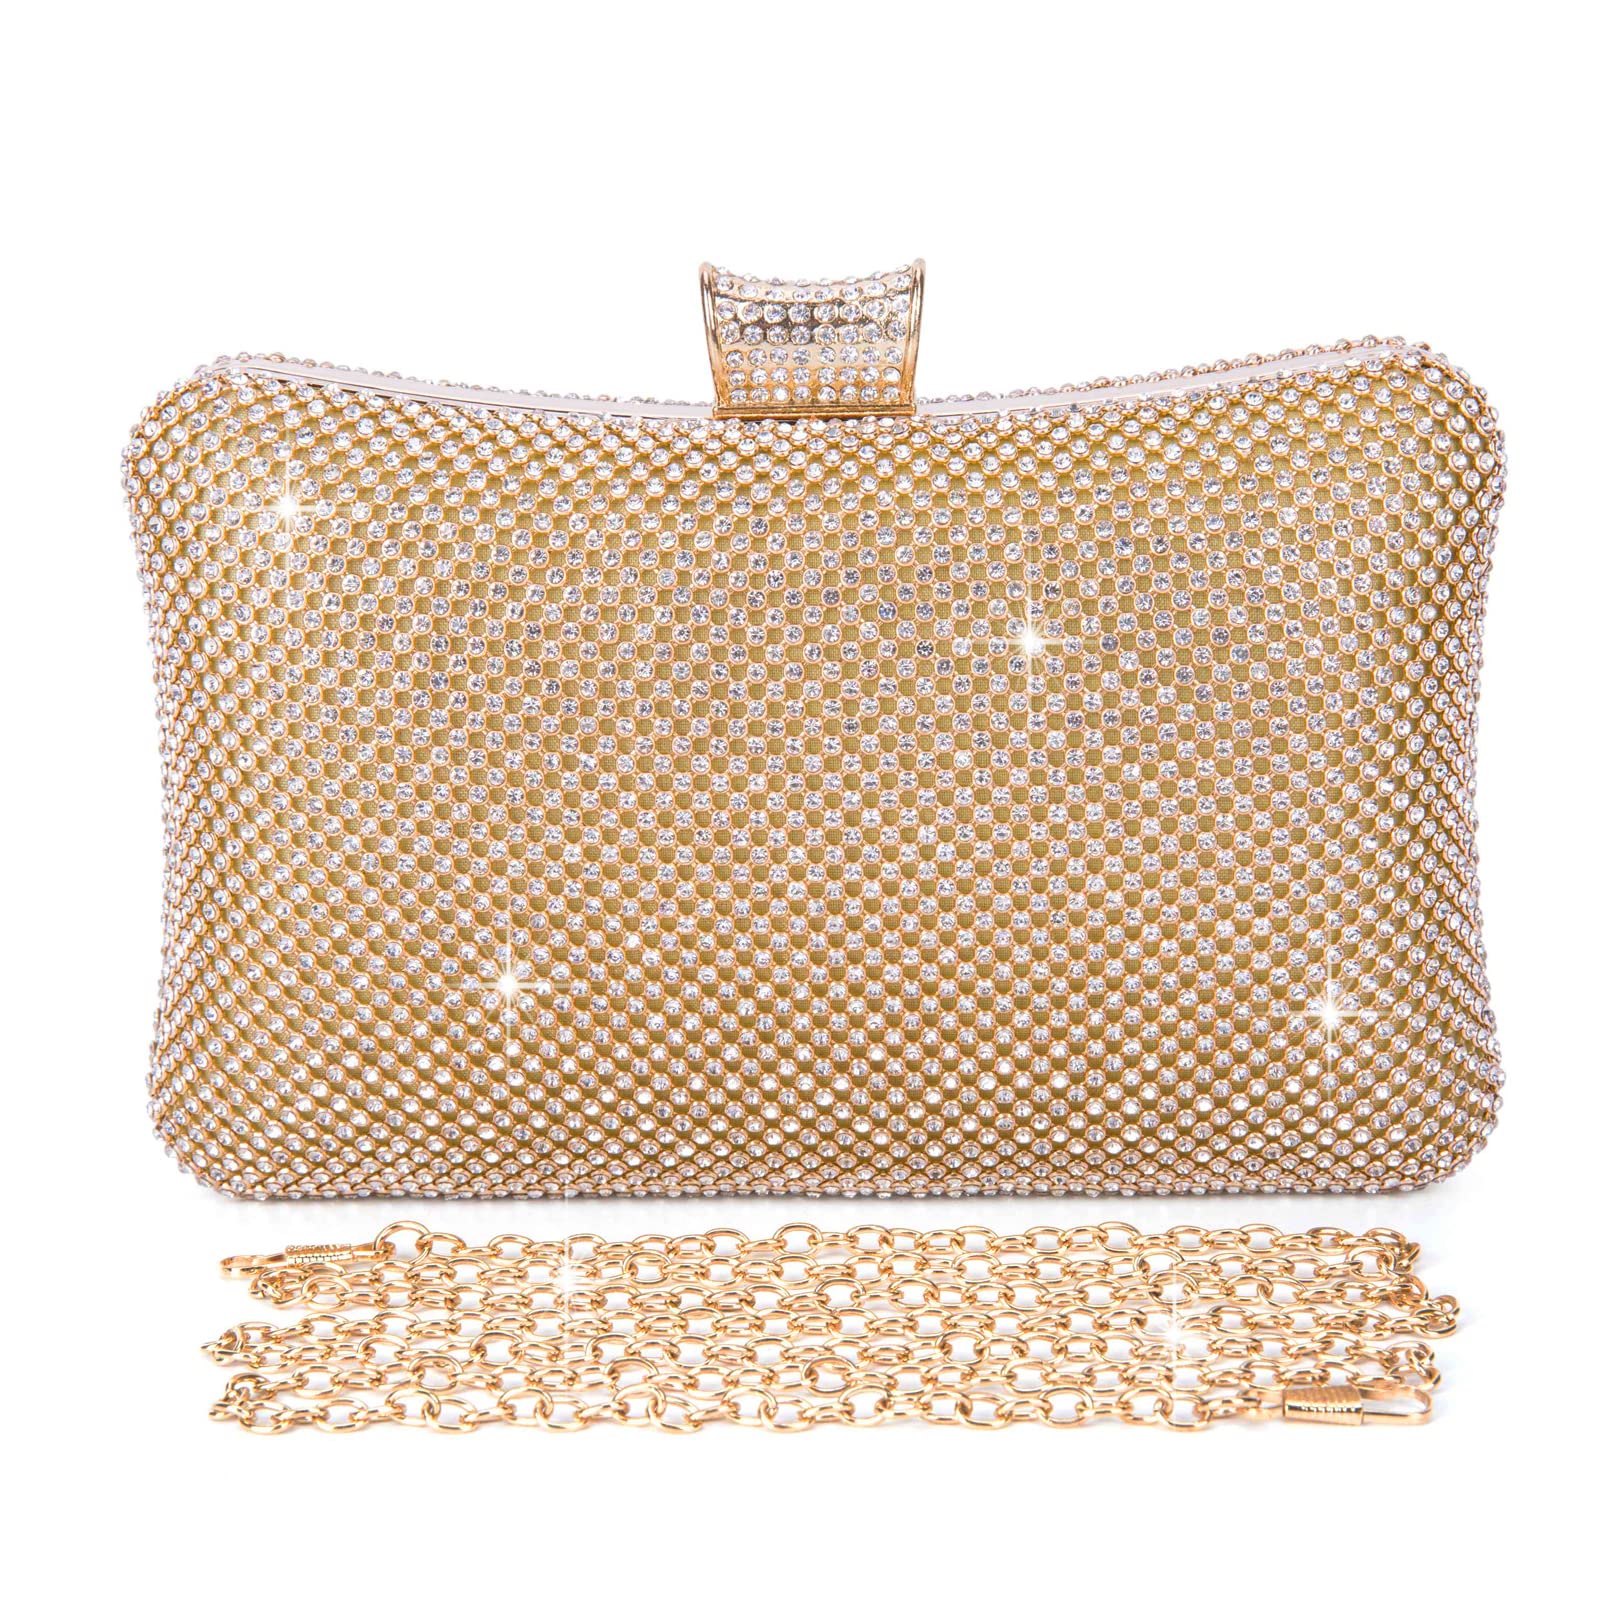 BAIGIO Damen Clutch Gold Abendtasche Glitzer Tasche Elegant Brauttasche Strass Handtasche Glitter Umhängetasche mit Strass für Party Hochzeit